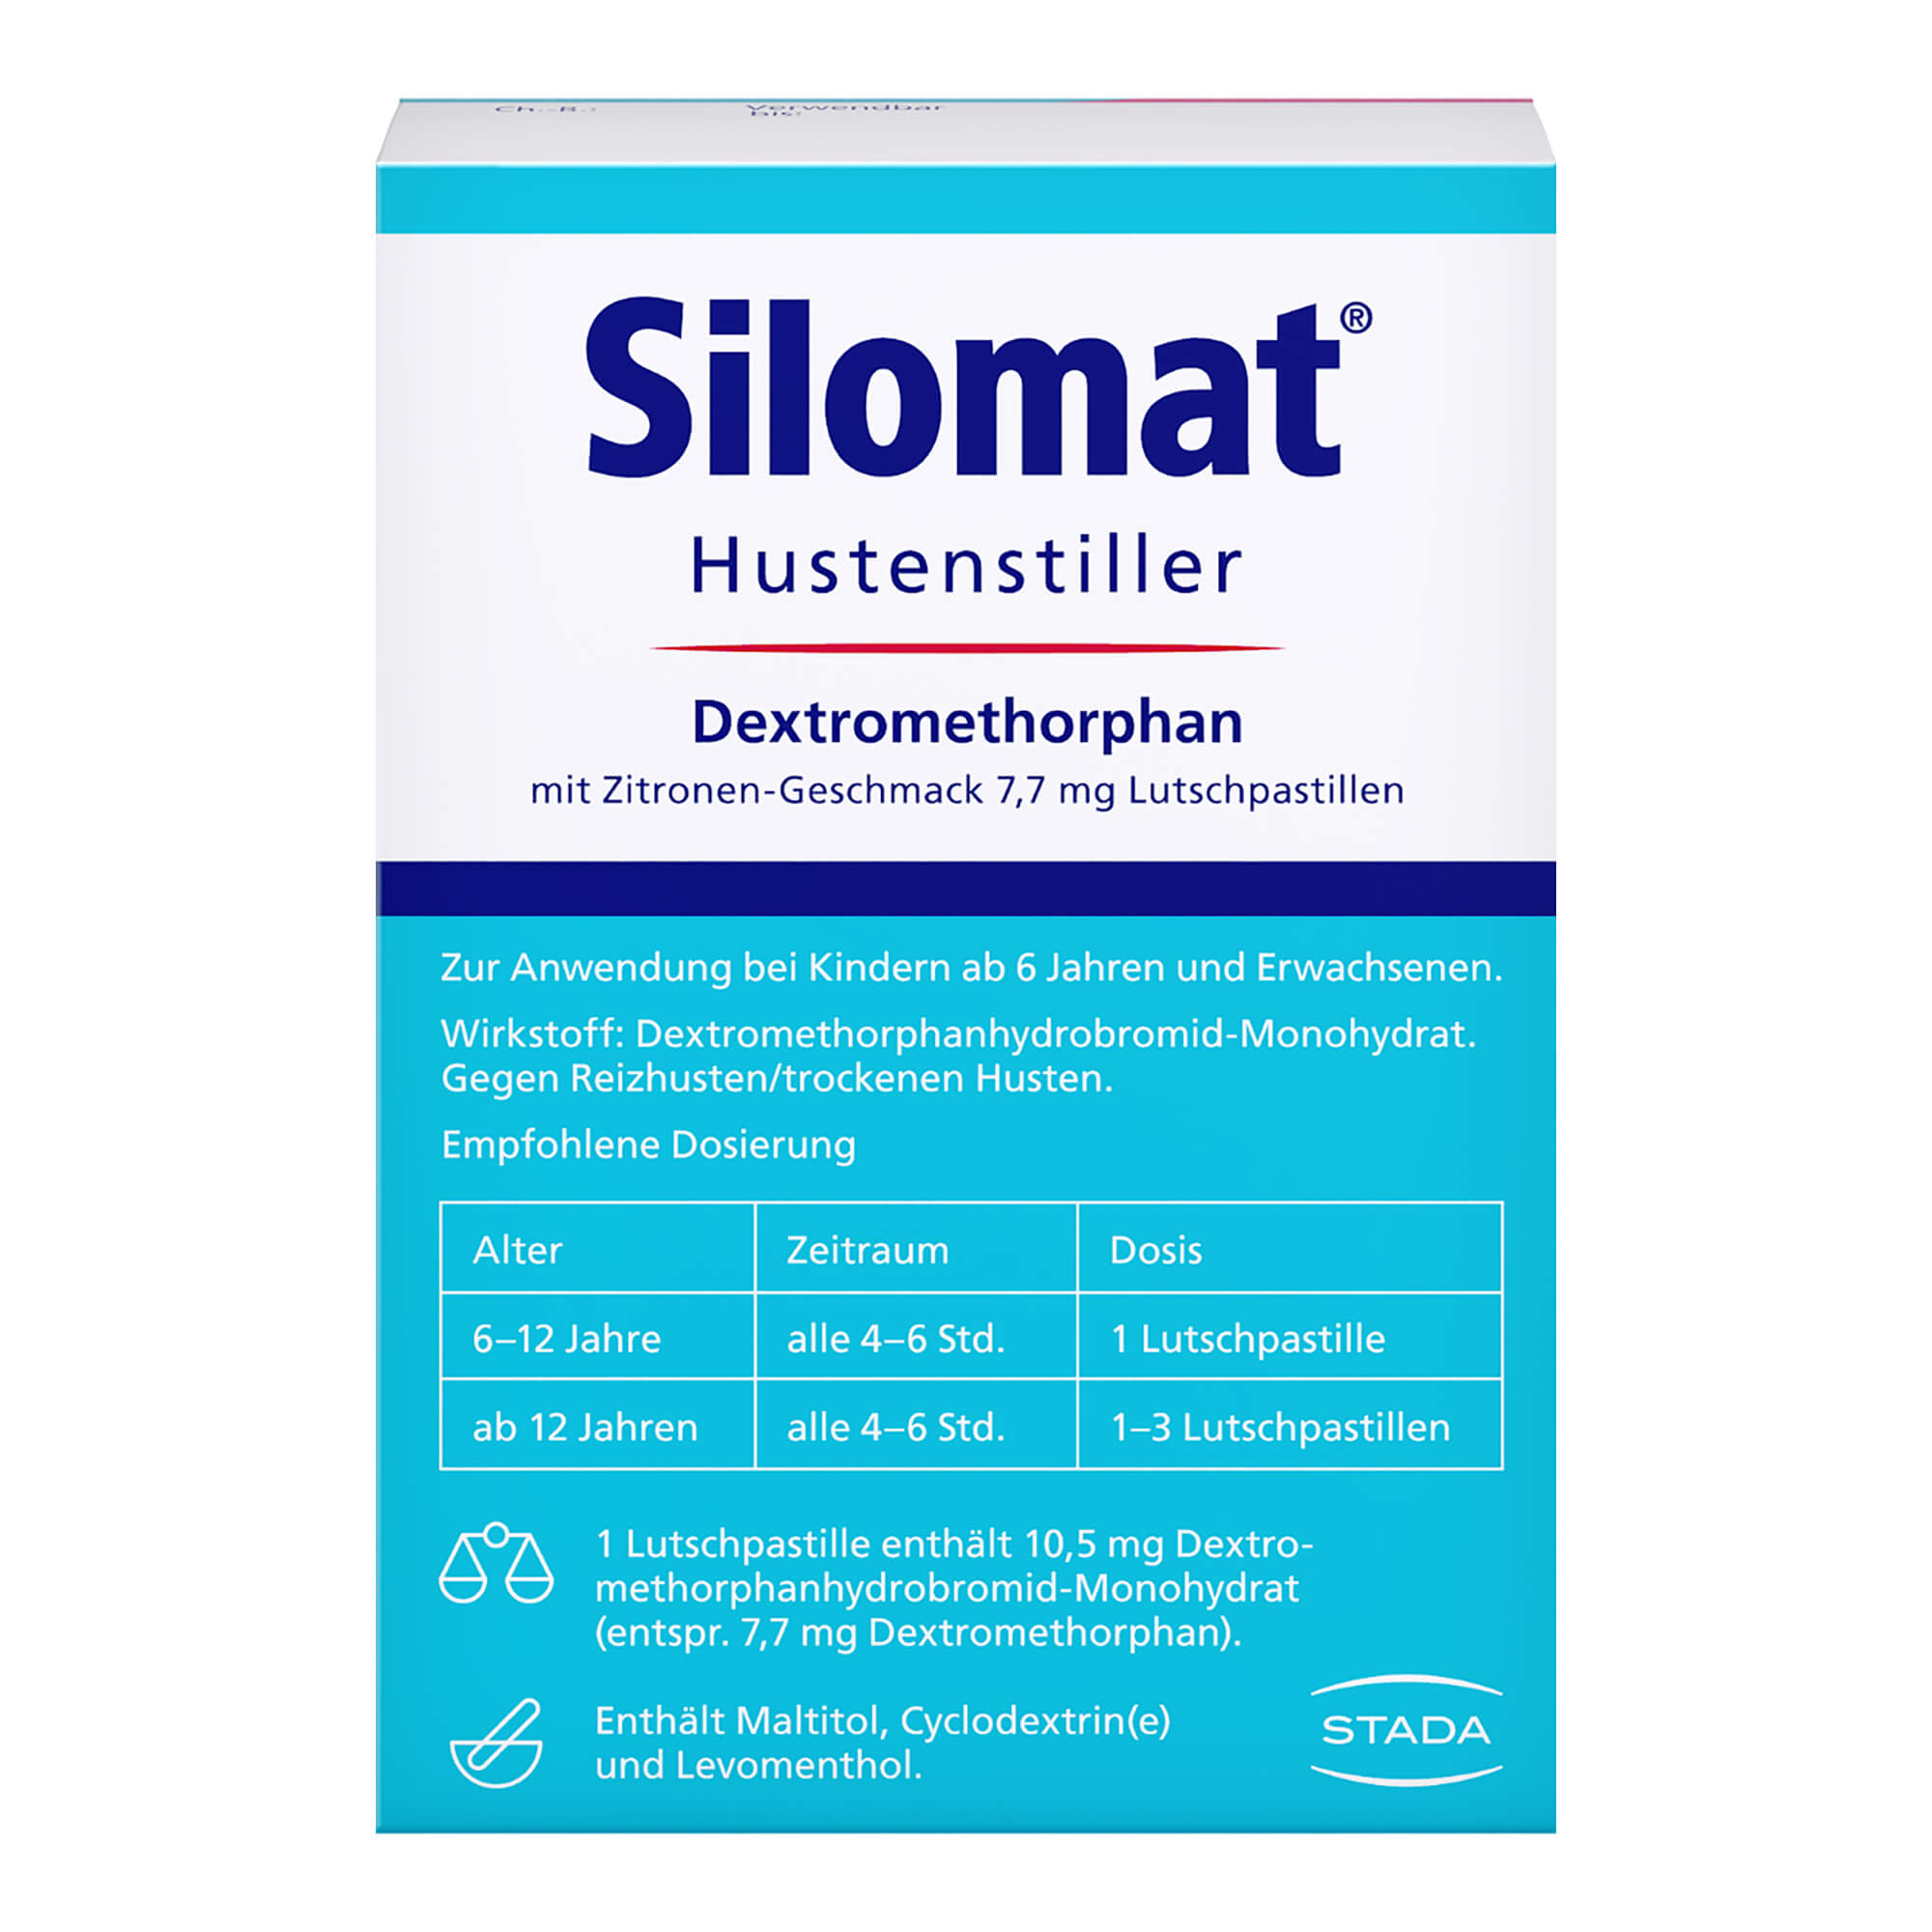 Silomat Hustenstiller Dextromethorphan mit Zitronen-Geschmack 7,7 mg Lutschpastillen Packungsrückseite